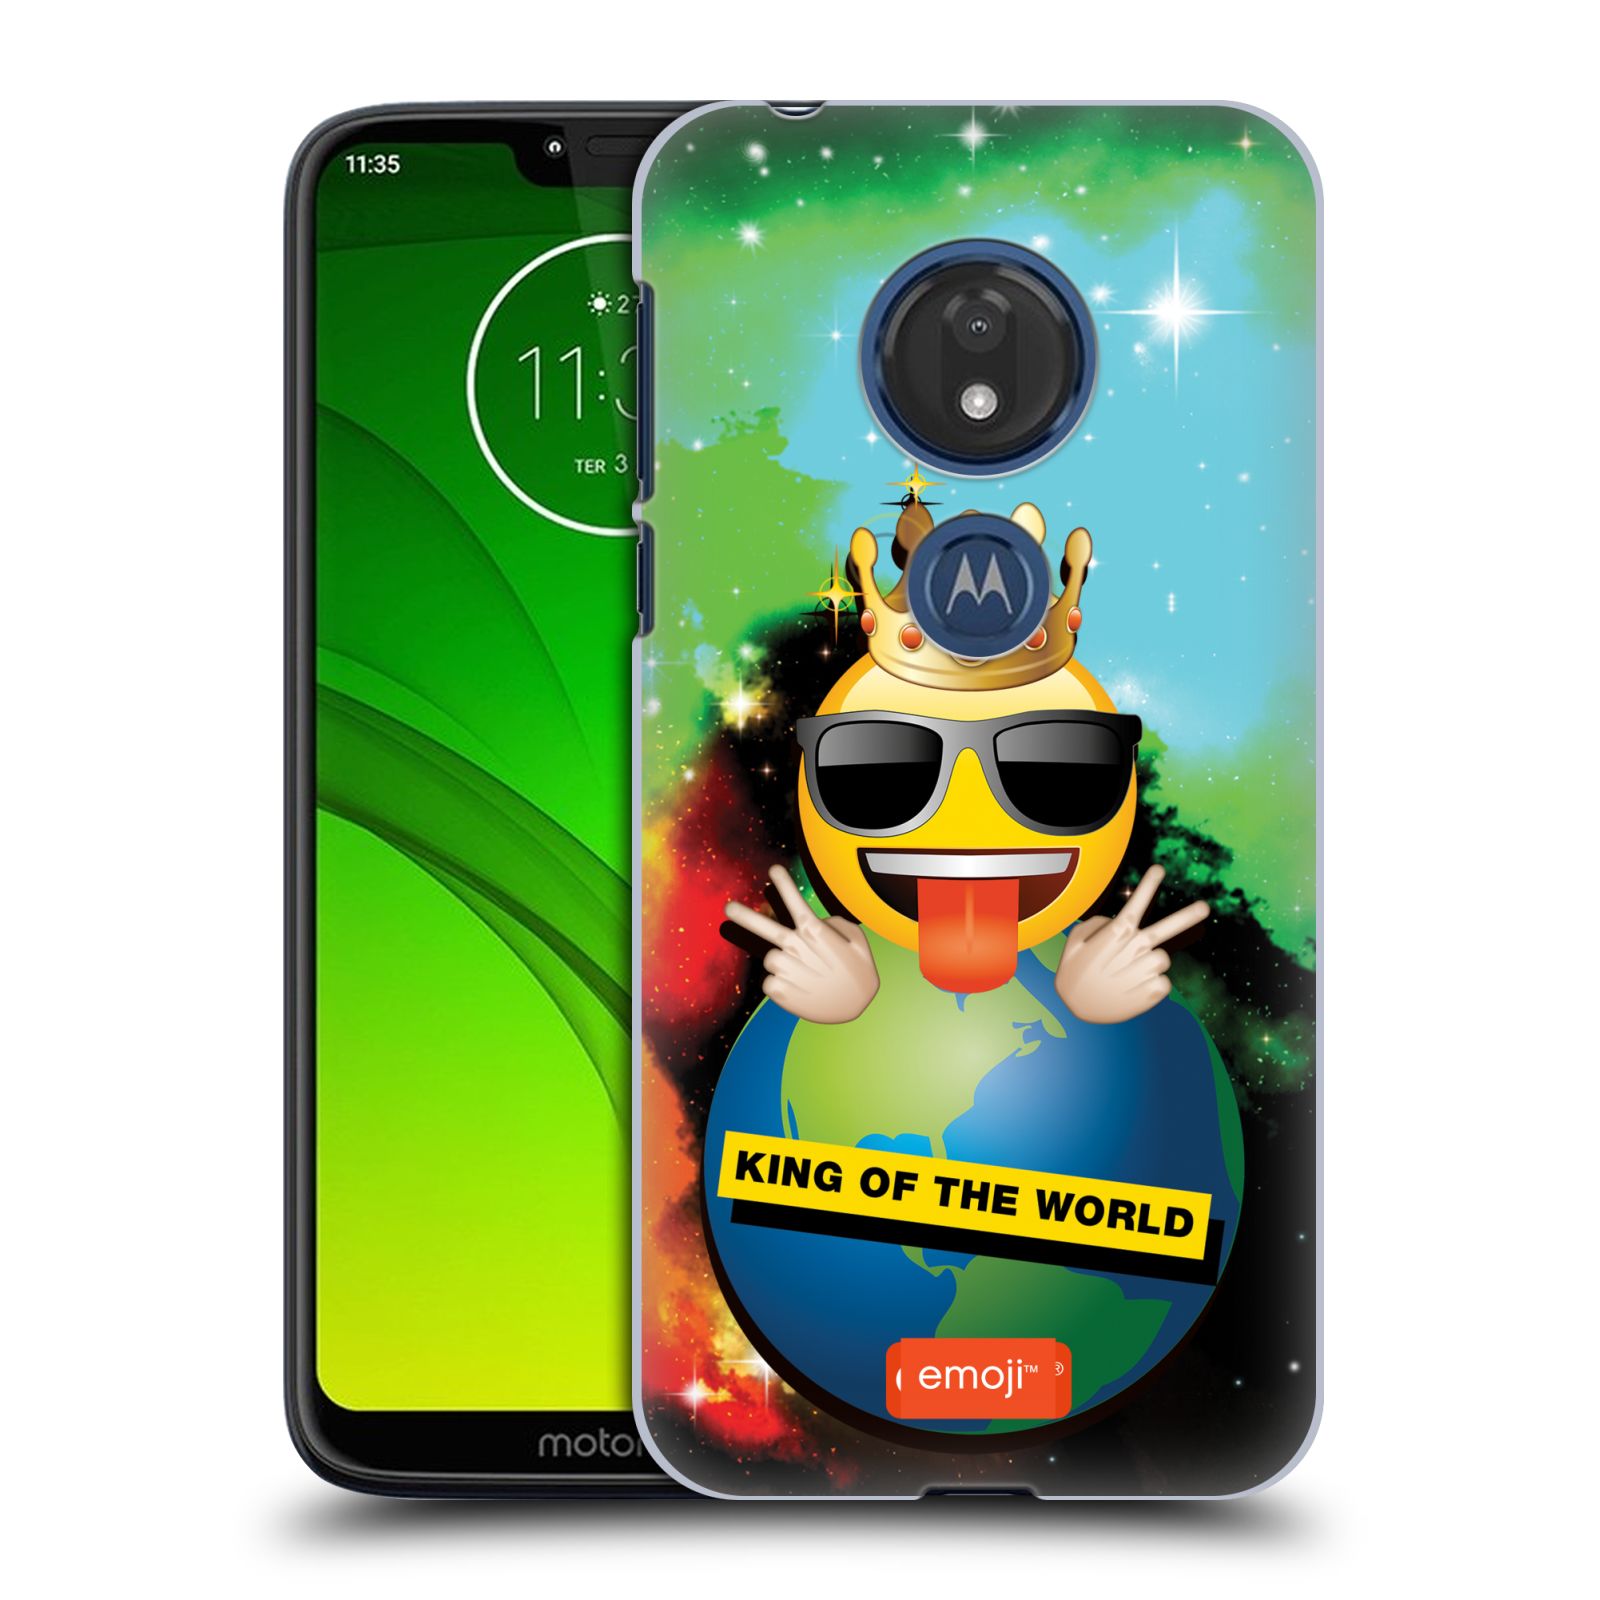 Pouzdro na mobil Motorola Moto G7 Play smajlík oficiální kryt EMOJI velký smajlík král světa